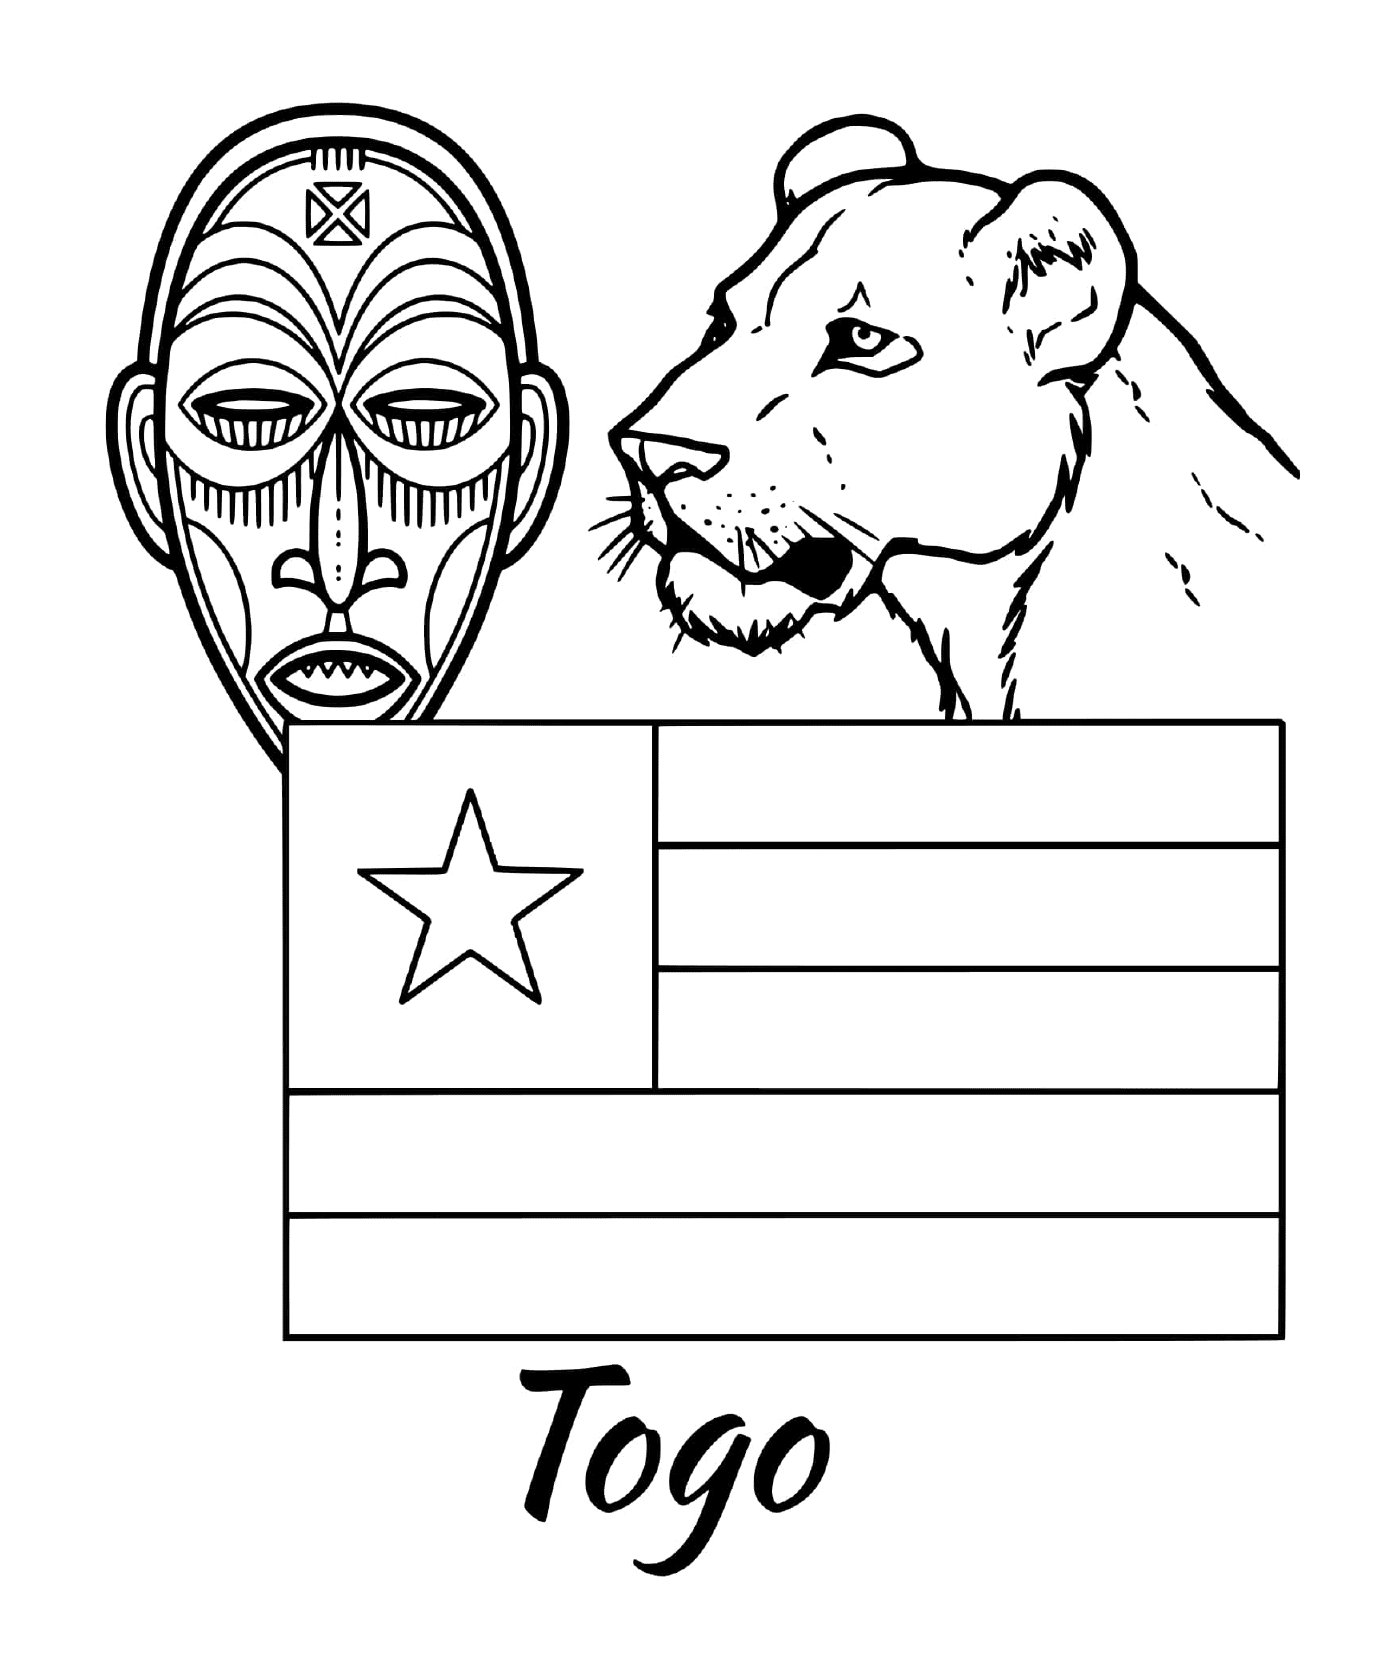  Bandera de Togo con máscara tribal 